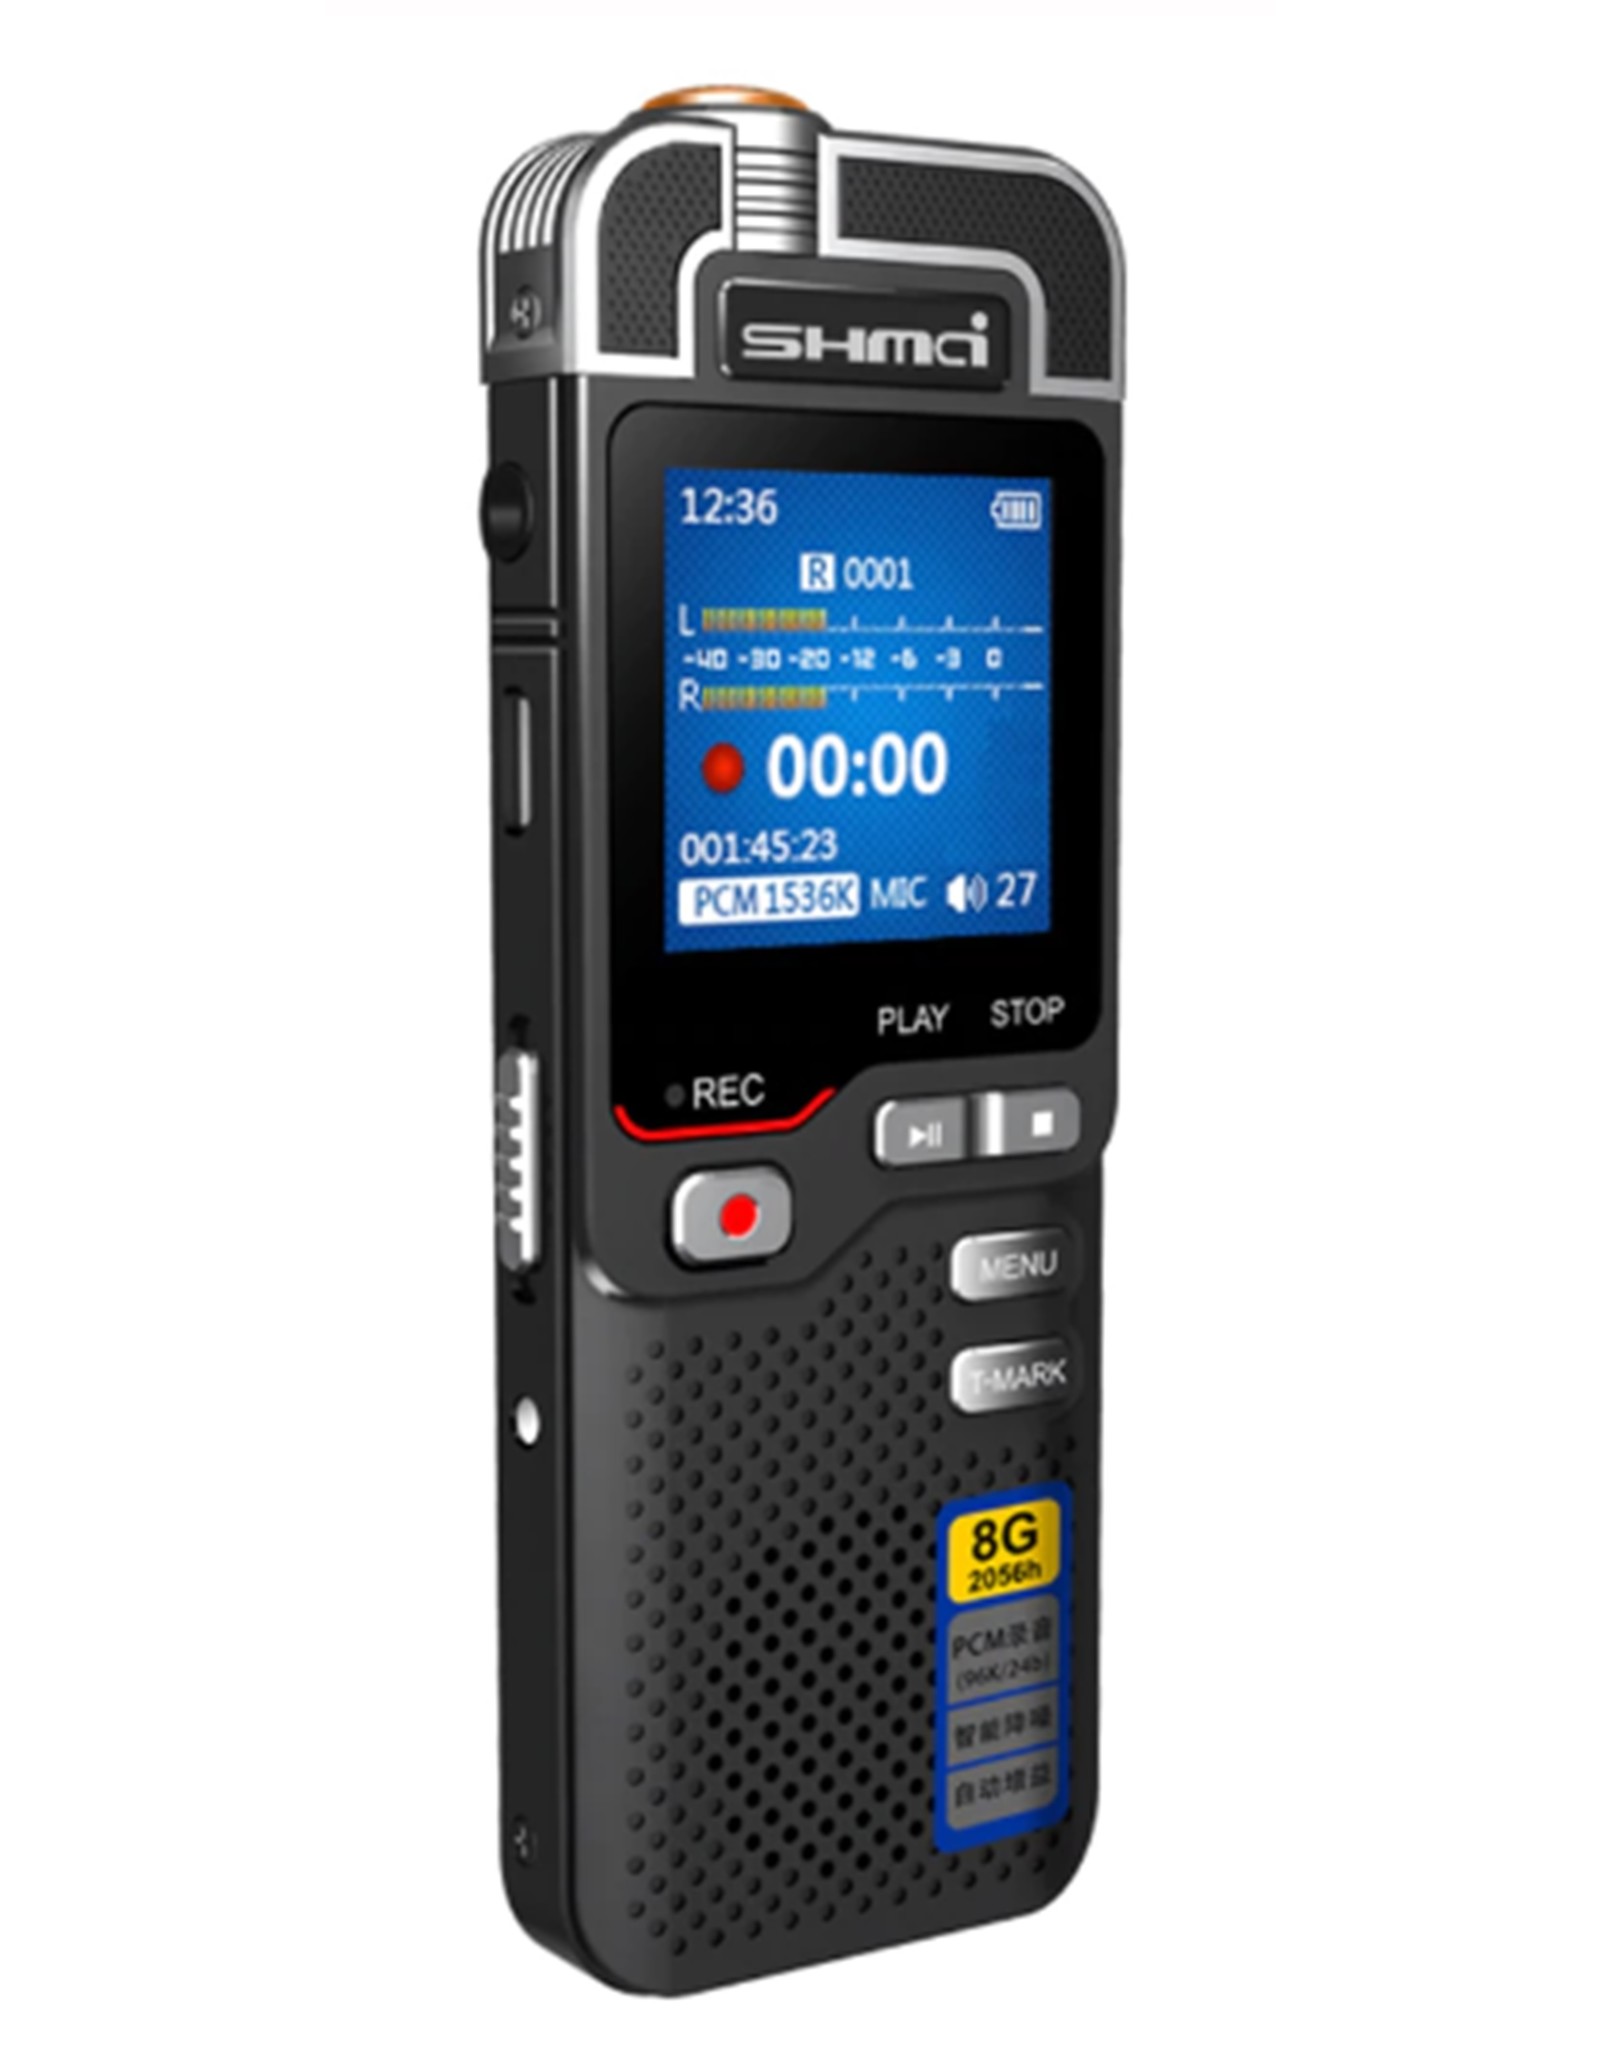 Merkloos Premium Digitale Recorder - Premium Voice Recorder - Multifunctionele Voice Recorder - Dictafoon 8 GB - Audio Memo Recorder Met USB - Spraak Recorder - Sound – Geluid Recorder - Opname Apparaat - Met MP3 Speler Functie – Zwart